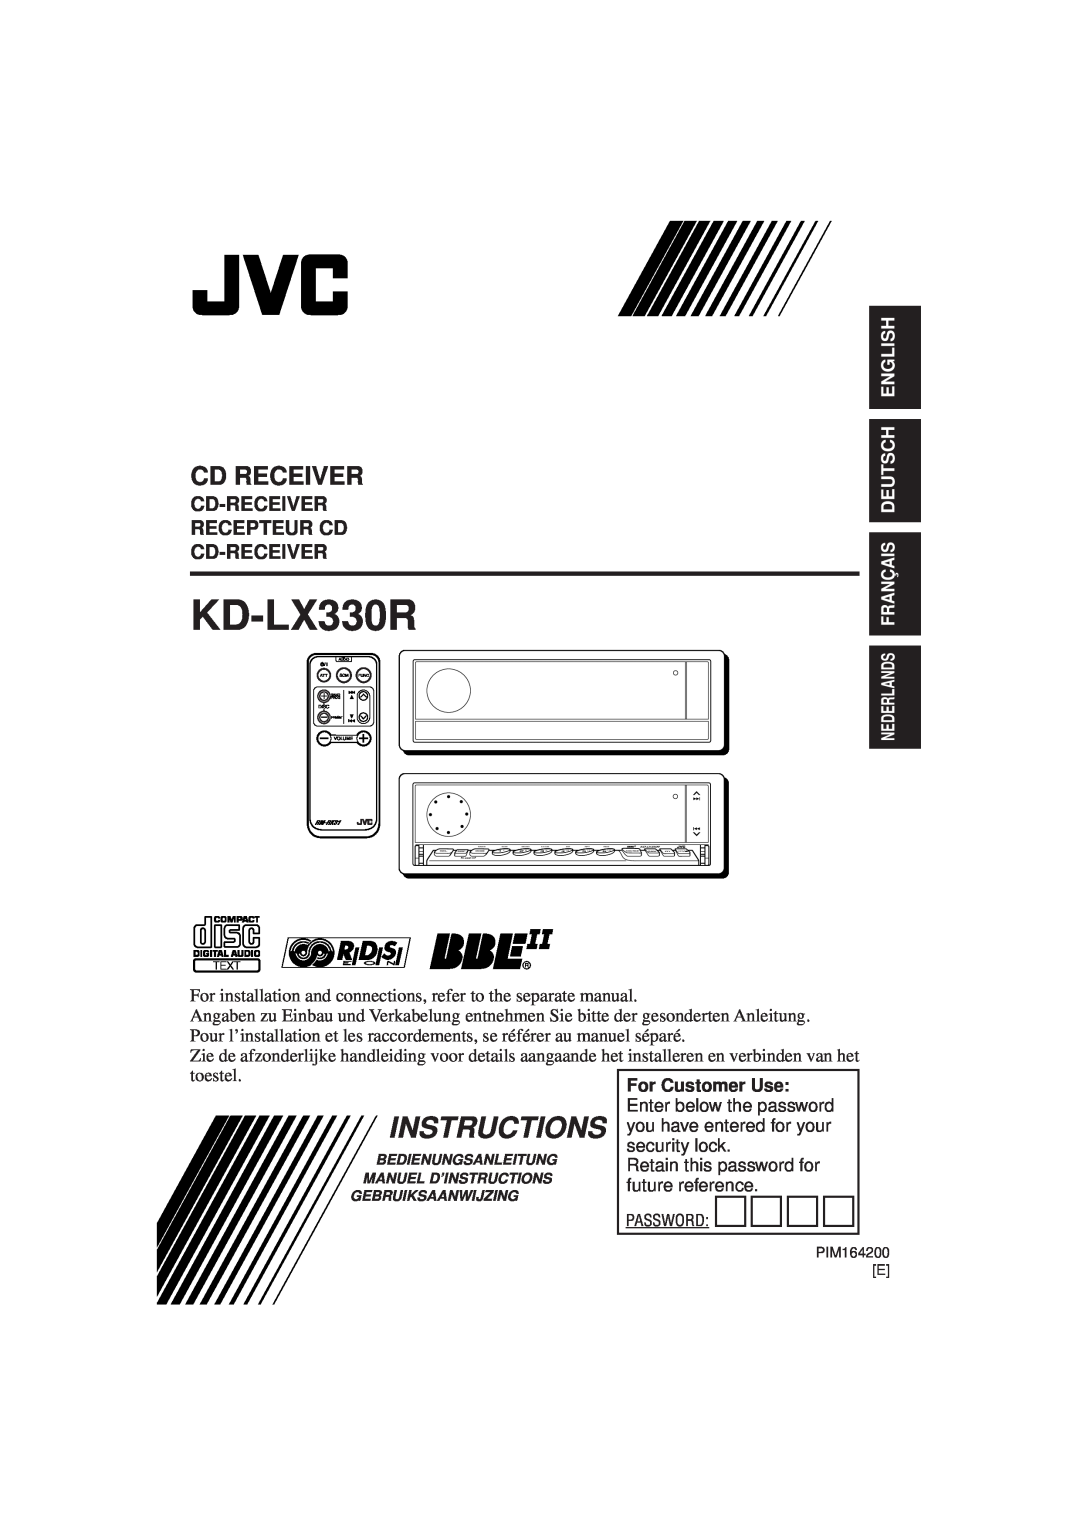 JVC KD-LX330R manual Instructions, Cd Receiver, Cd-Receiver Recepteur Cd Cd-Receiver, Nederlands Français Deutsch English 